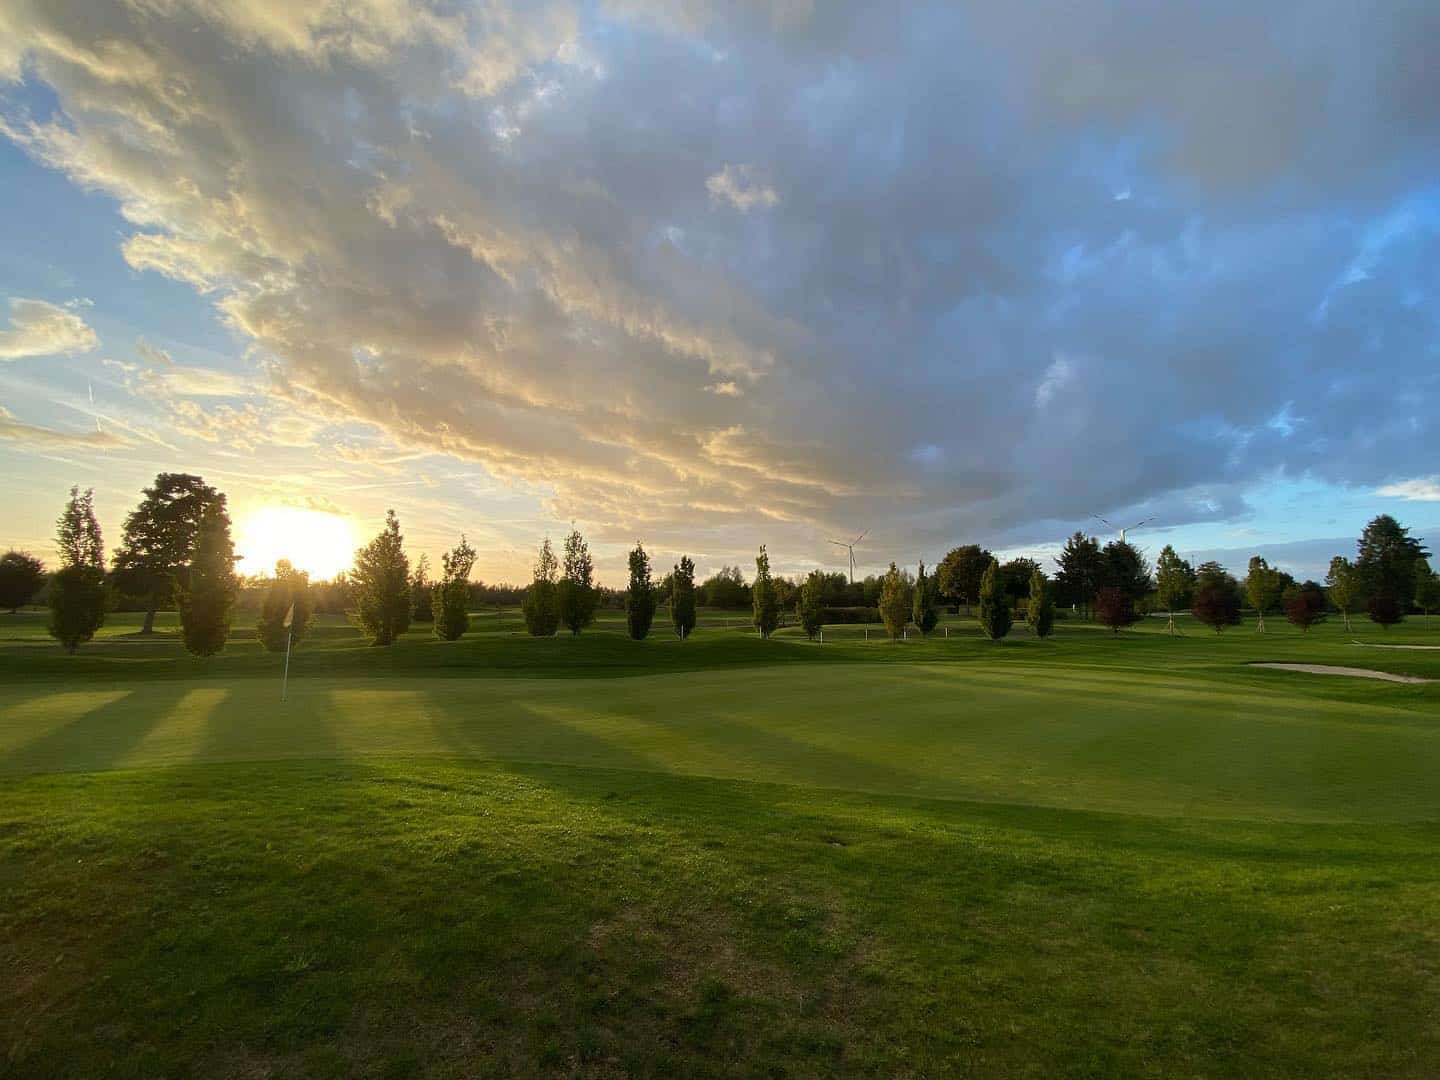 Eine entspannte Runde am späten Nachmittag. Schön war es mit @bonzai74 im @golfclub_wildenrath_e.v